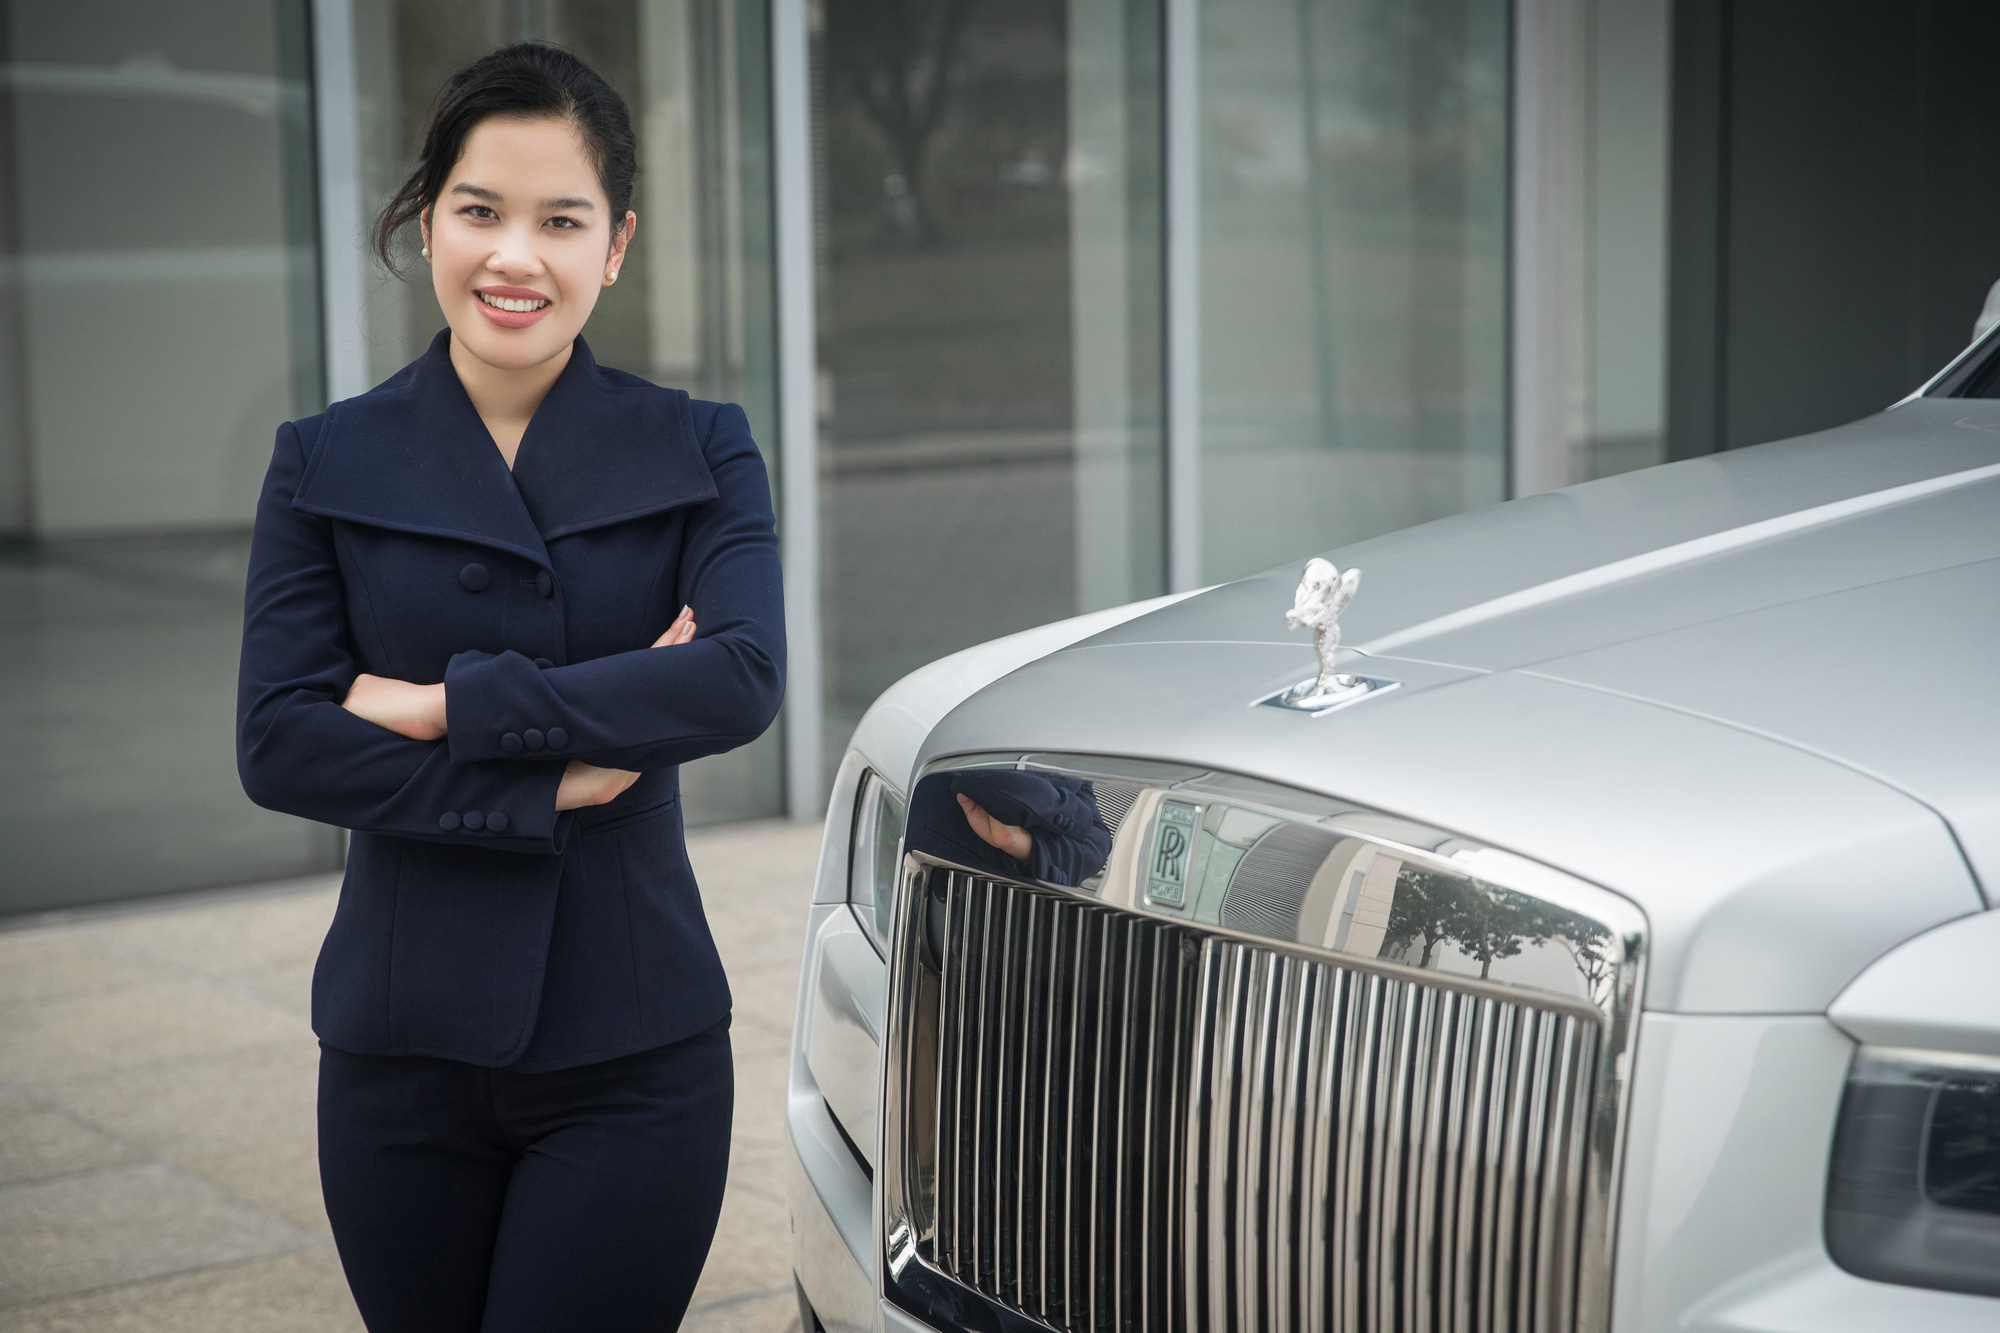 Rolls-Royce công bố nhà phân phối mới tại Việt Nam - Đơn vị chuyên bán đồng hồ tiền tỷ Hublot, Richard Mille - Ảnh 2.